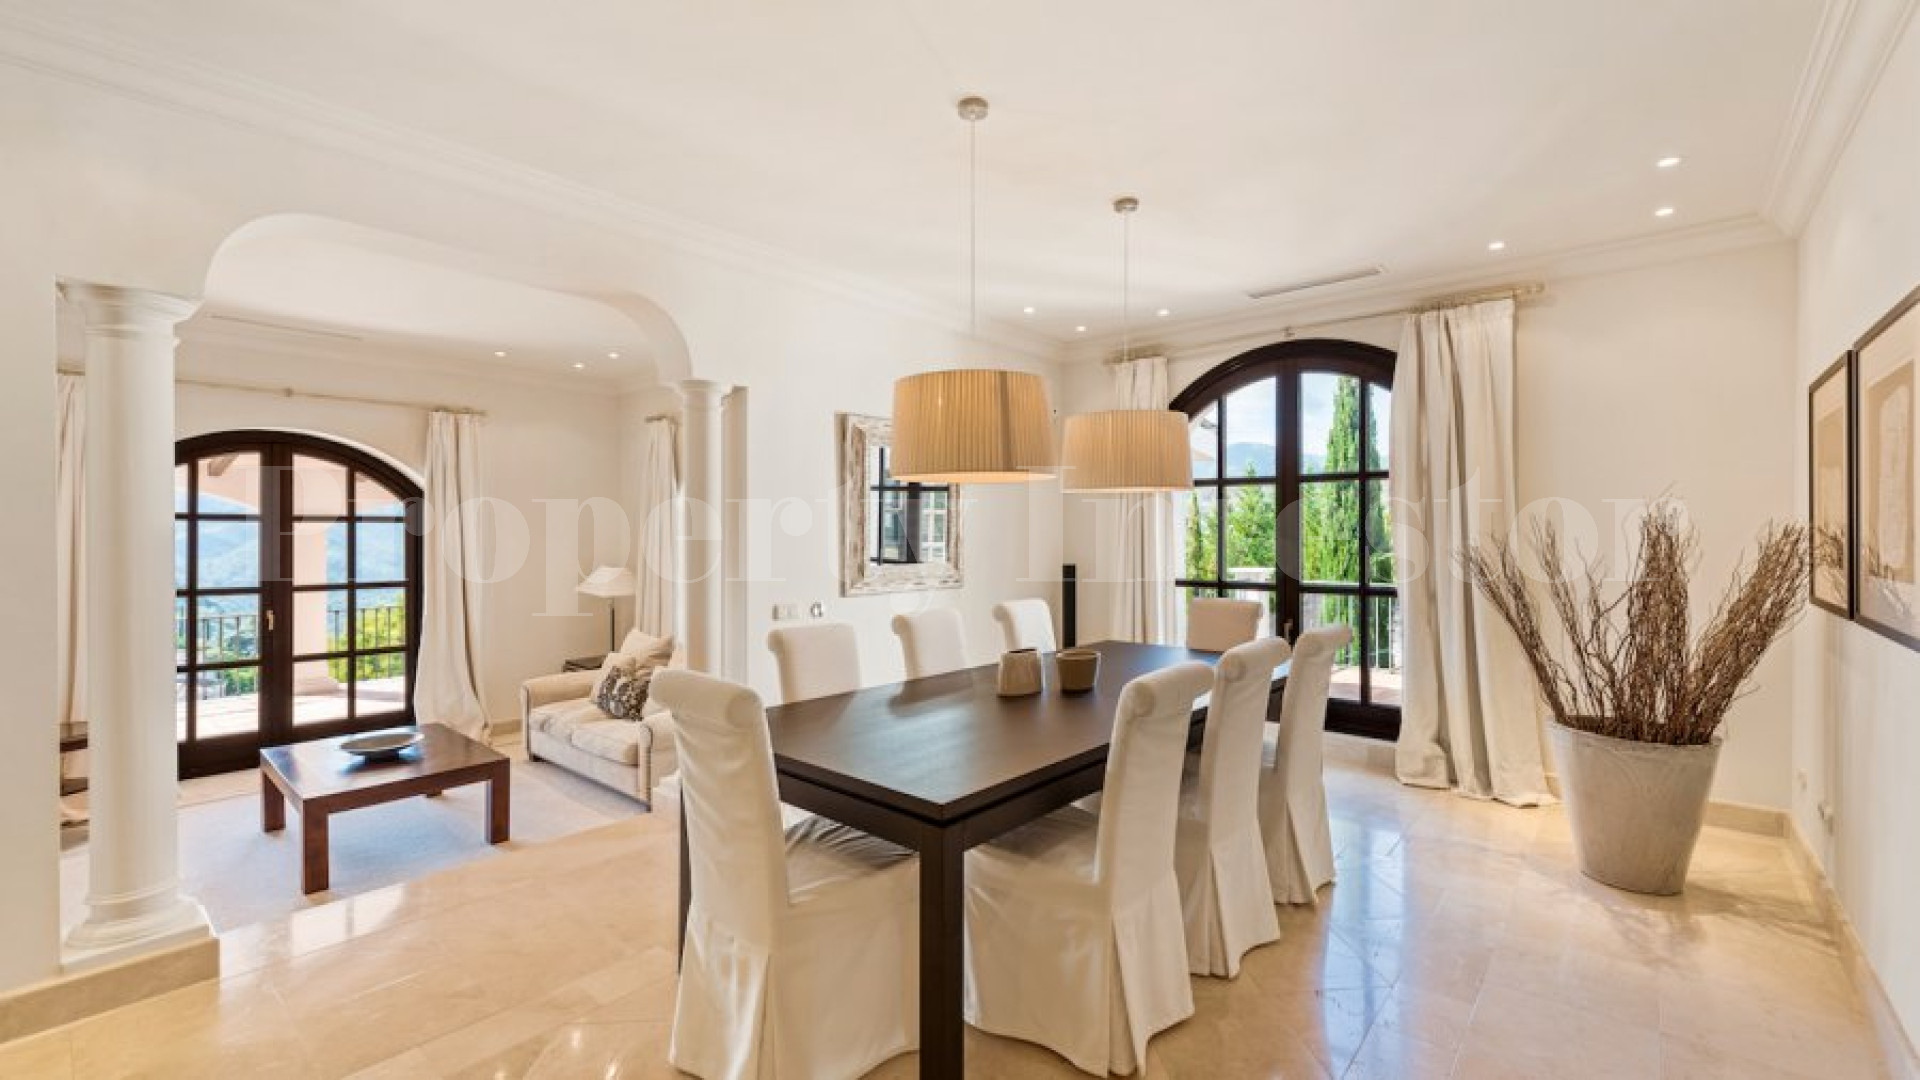 5 Bedroom Luxury Hillside Villa in La Zagaleta